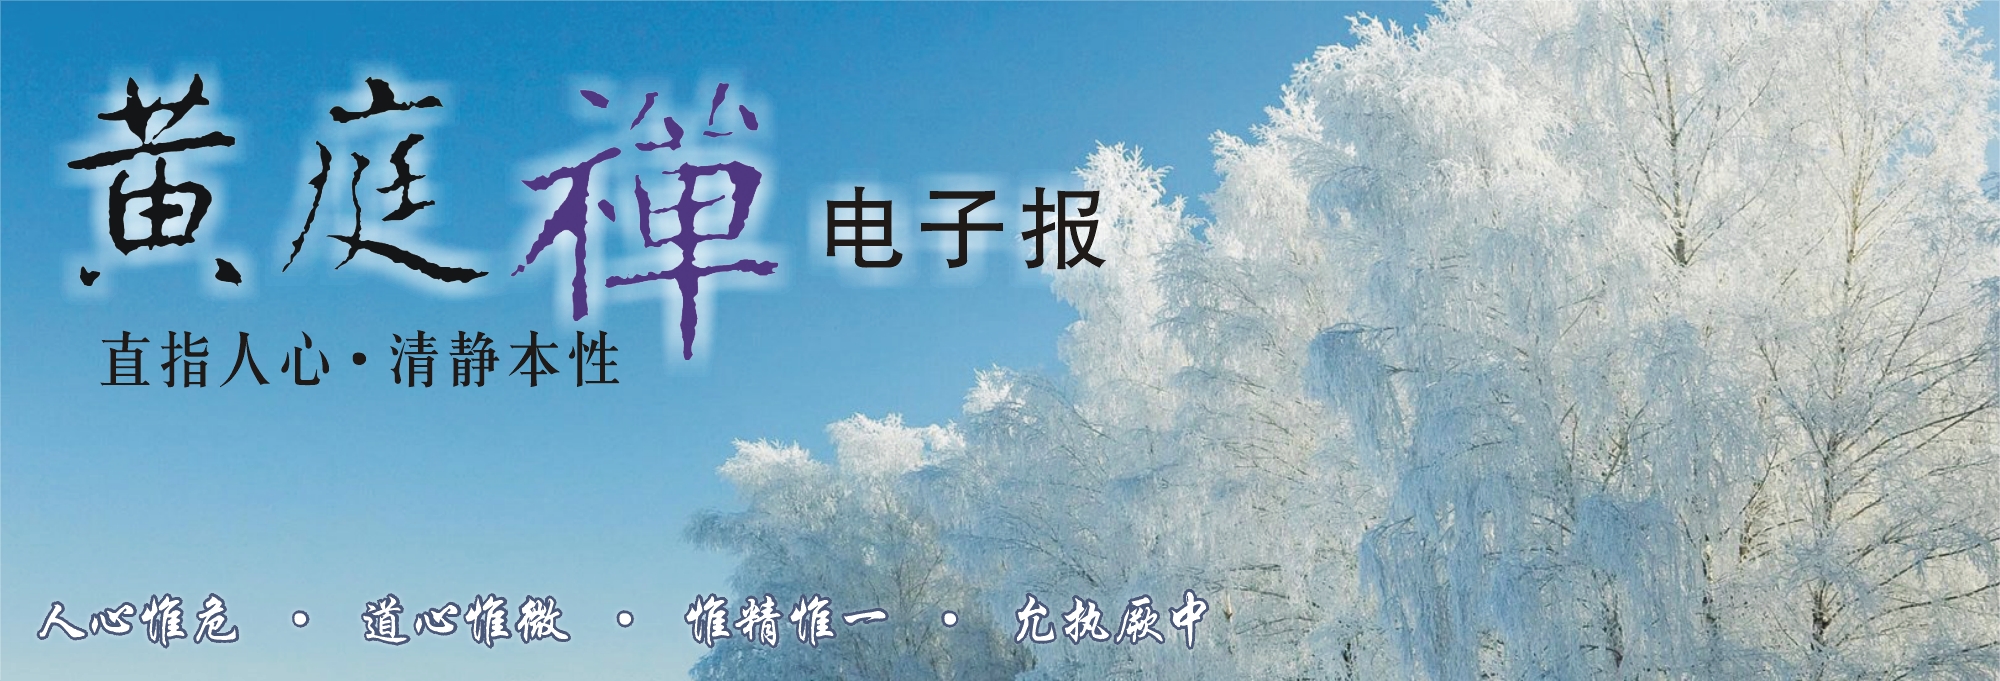 中华黄庭禅学会2014.12.11电子报